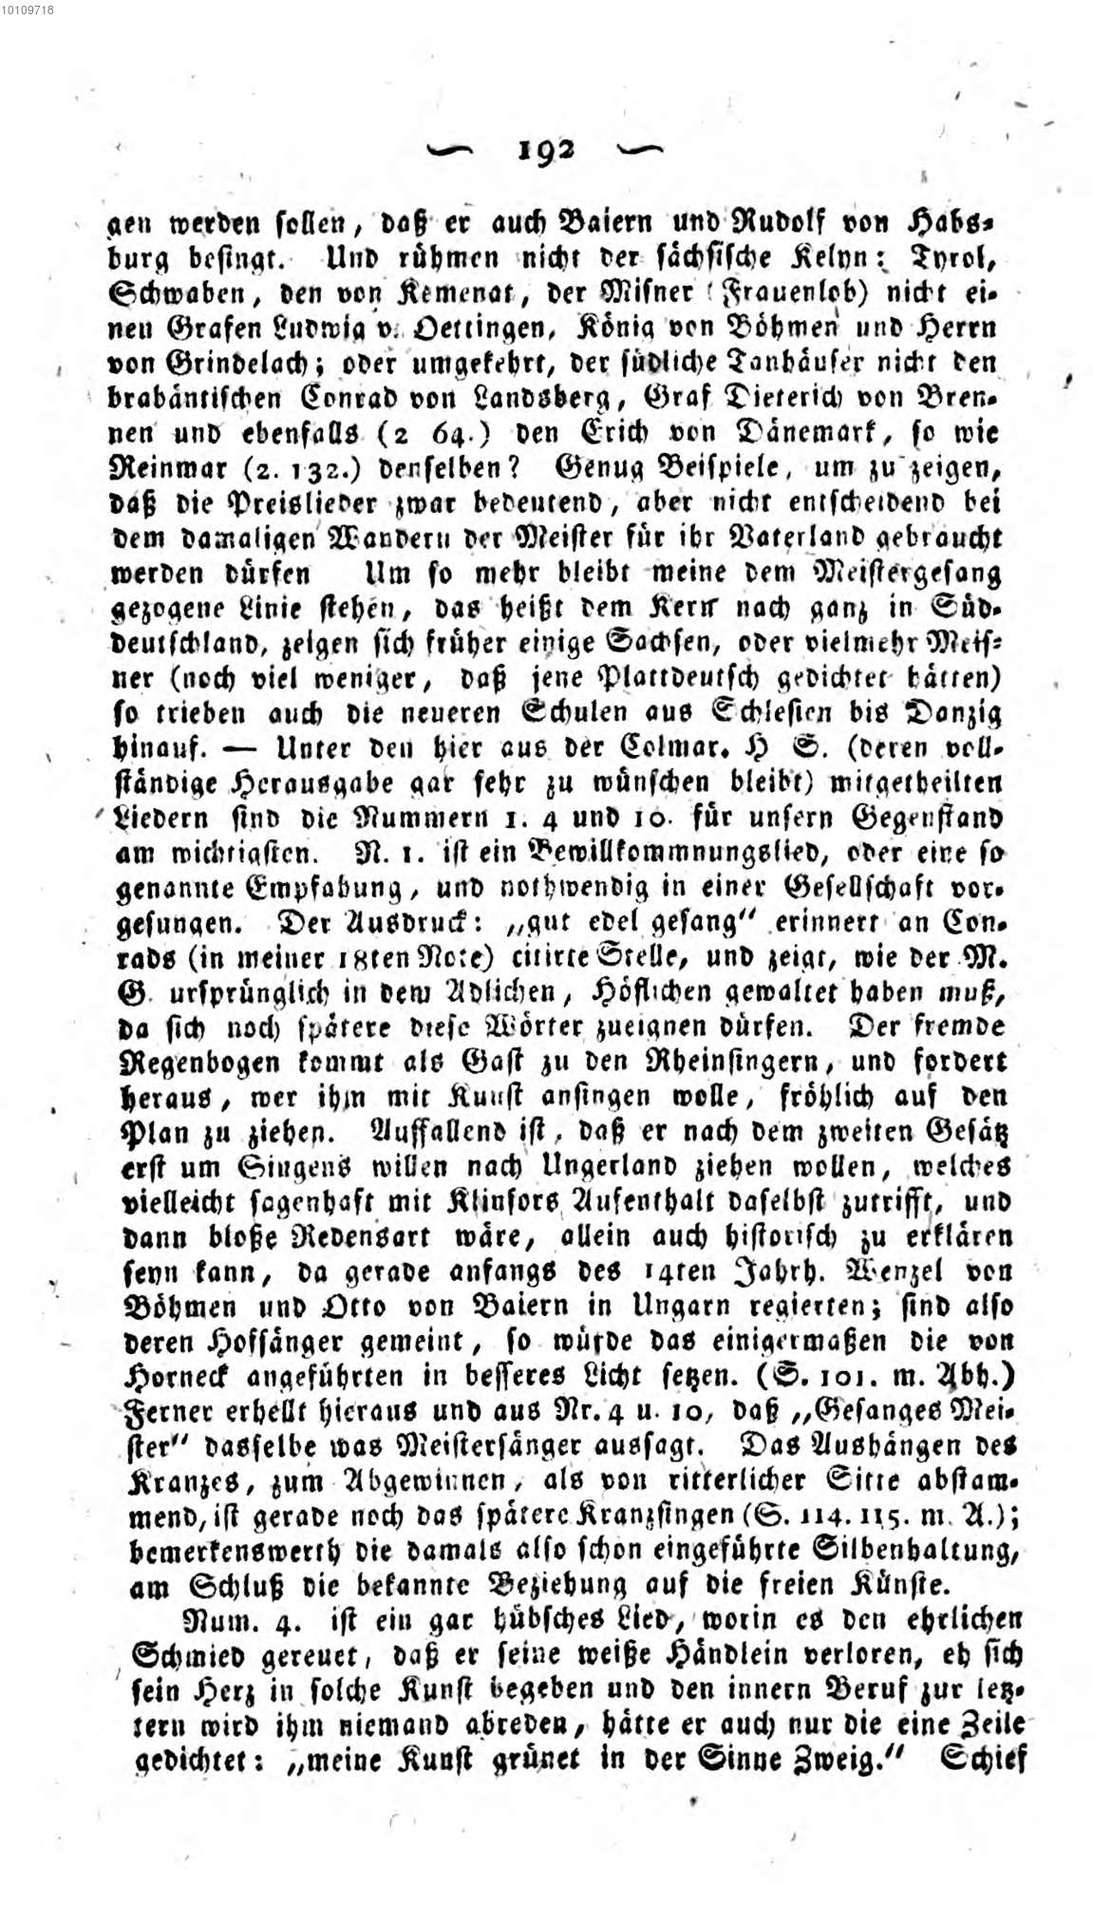 Grimm_J_-_Ueber_den_altdeutschen_Meistergesang-193.jpg